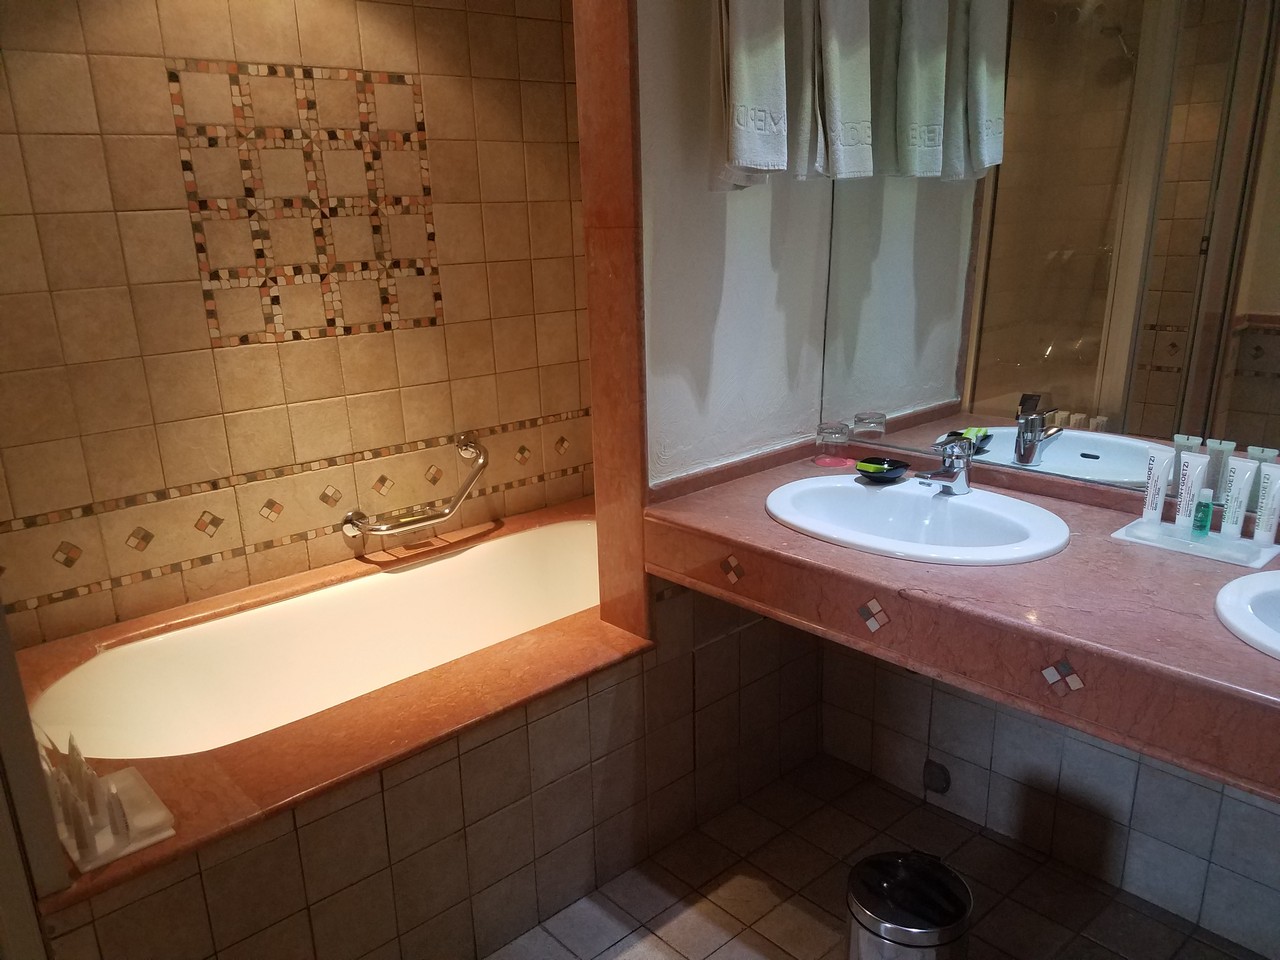 a bathroom with a sink and bathtub